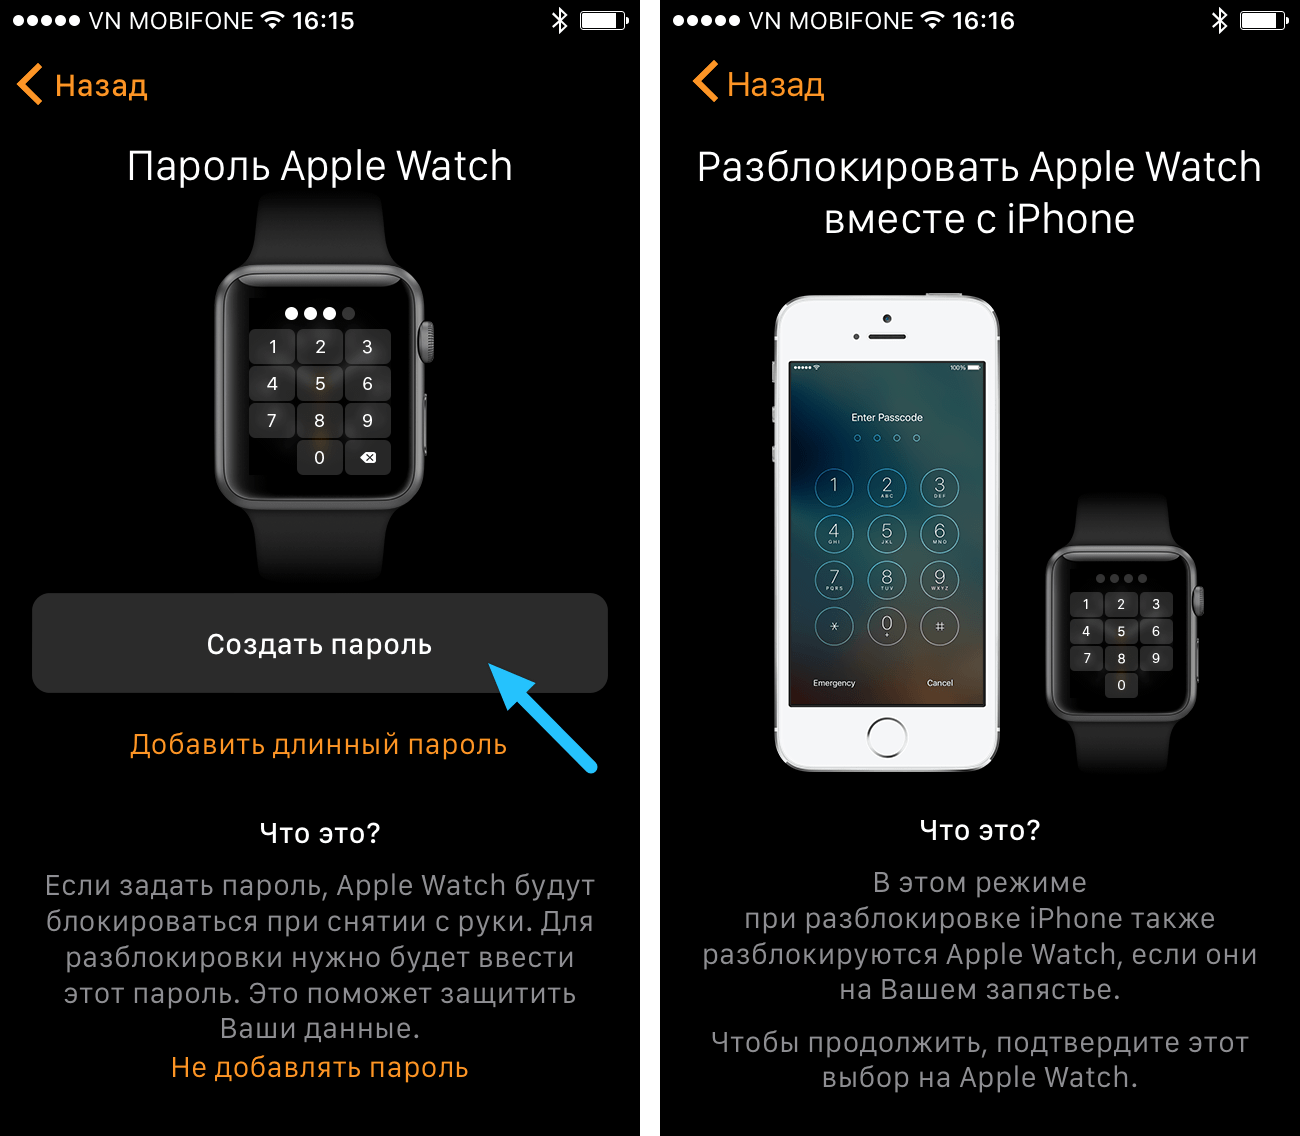 Как разблокировать часы apple. Как настроить часы Apple watch к телефону. Значок и на Эппл вотч. Где находится значок i на Apple watch 6. Значок i на эпл вотч.